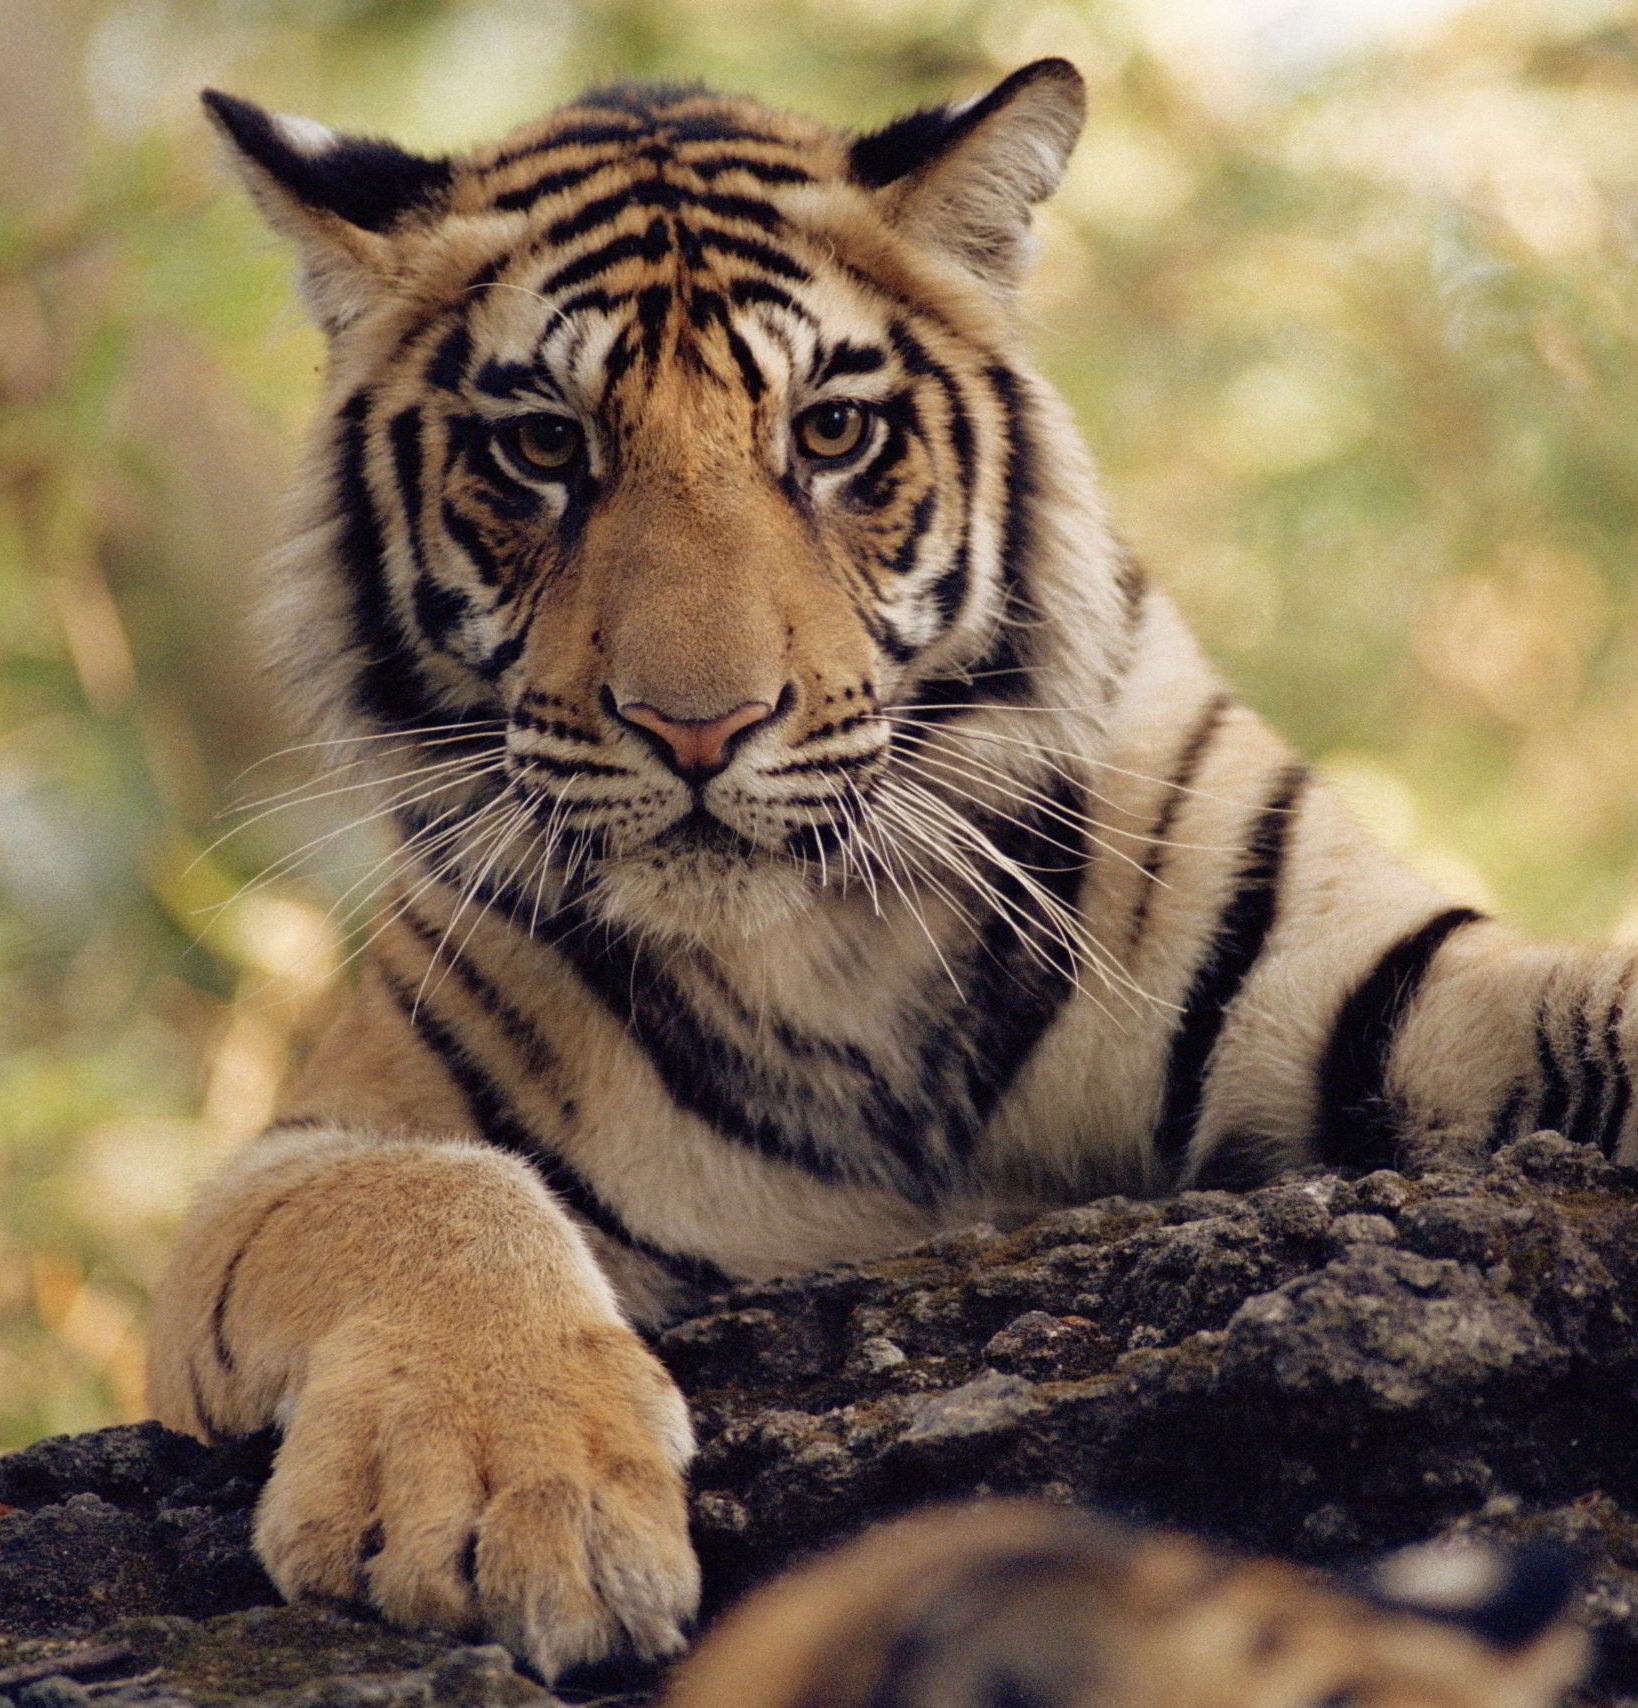 Tiger looking directly at camera